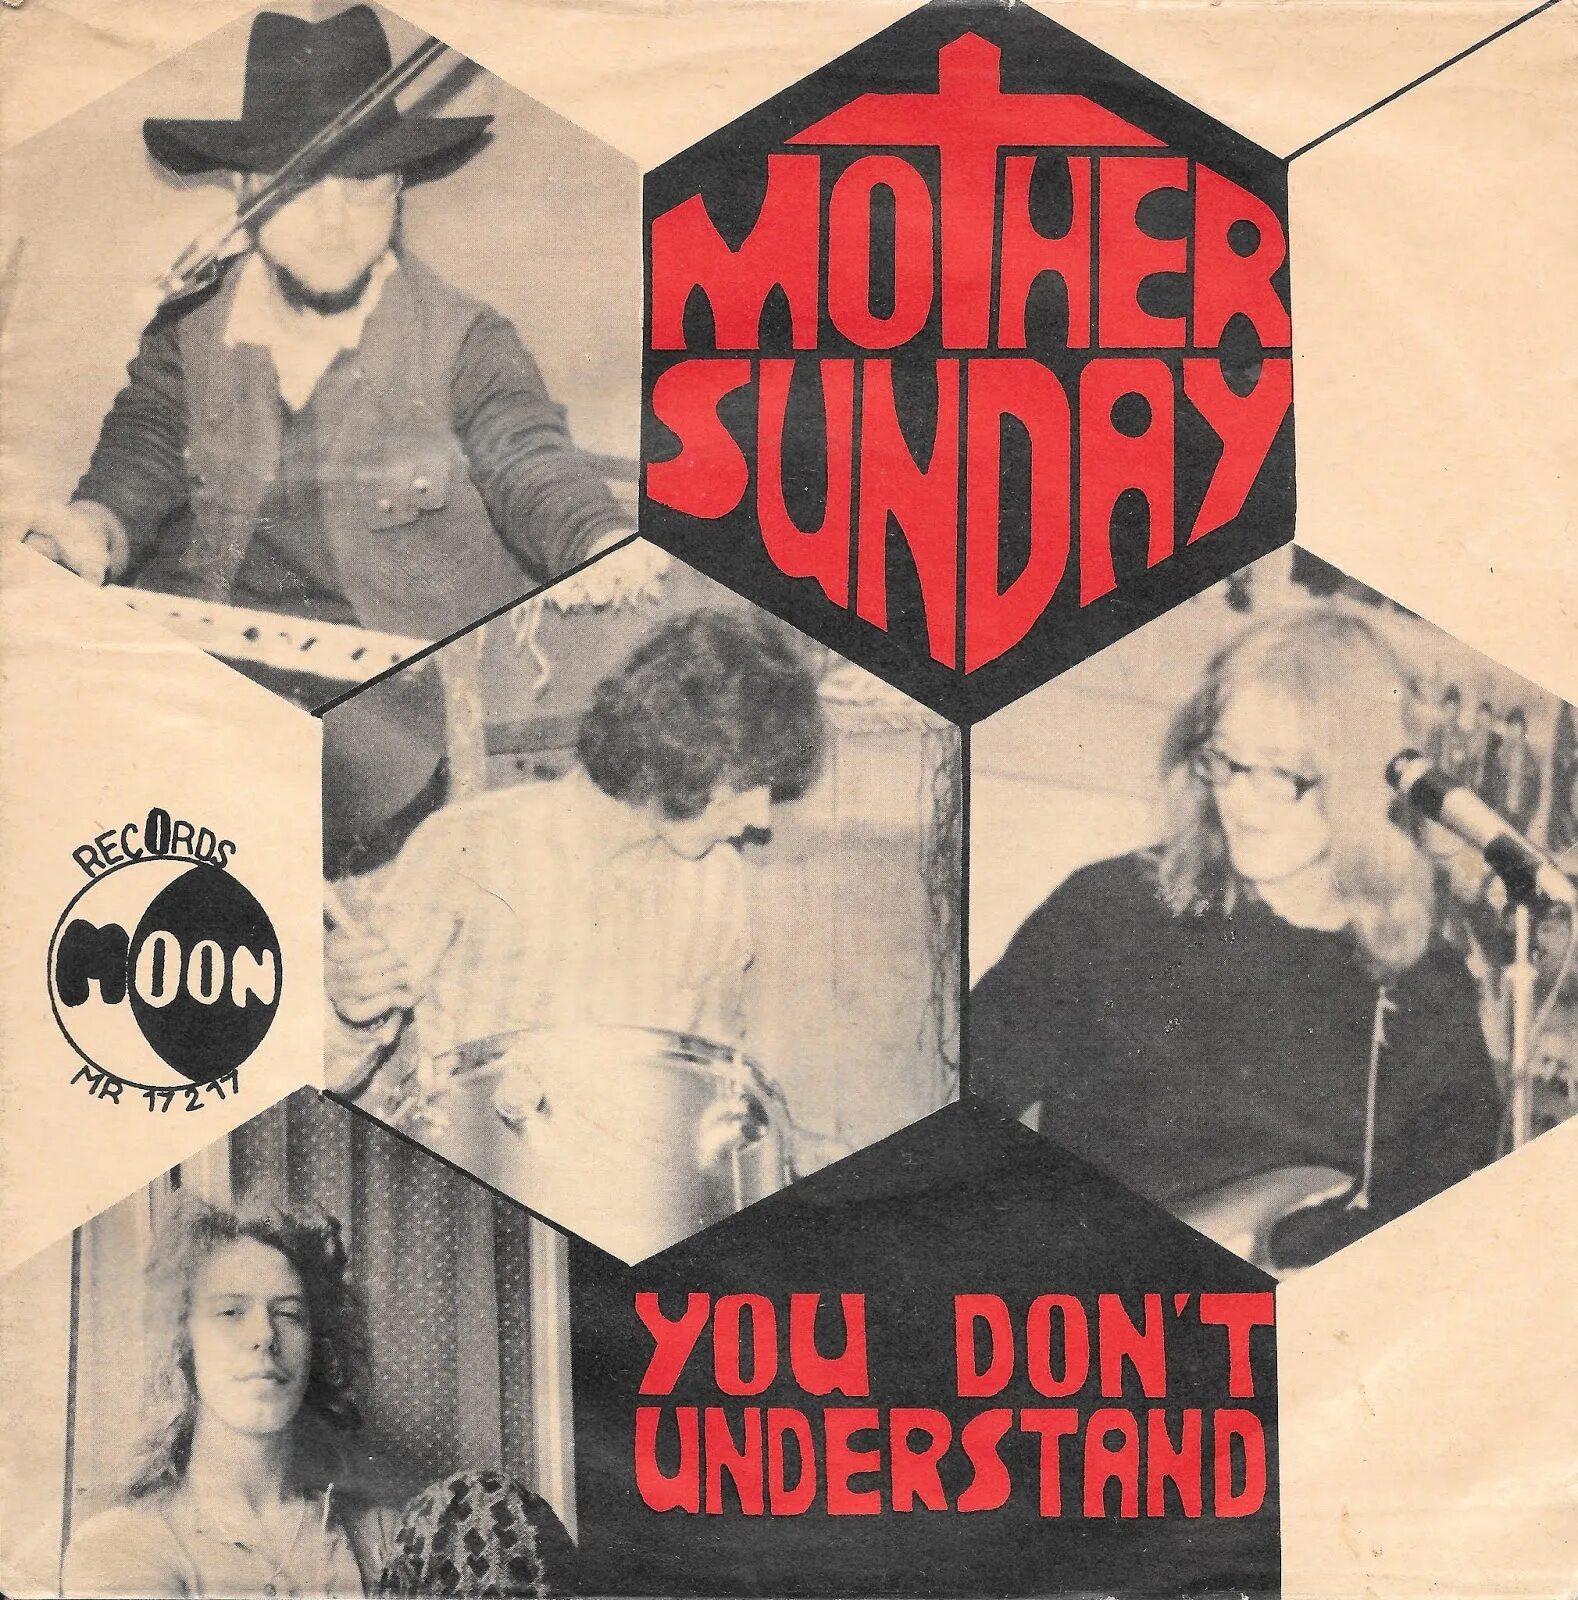 Sunday [uk] - Sunday (1971). Do you understand mother t. Sunday you now